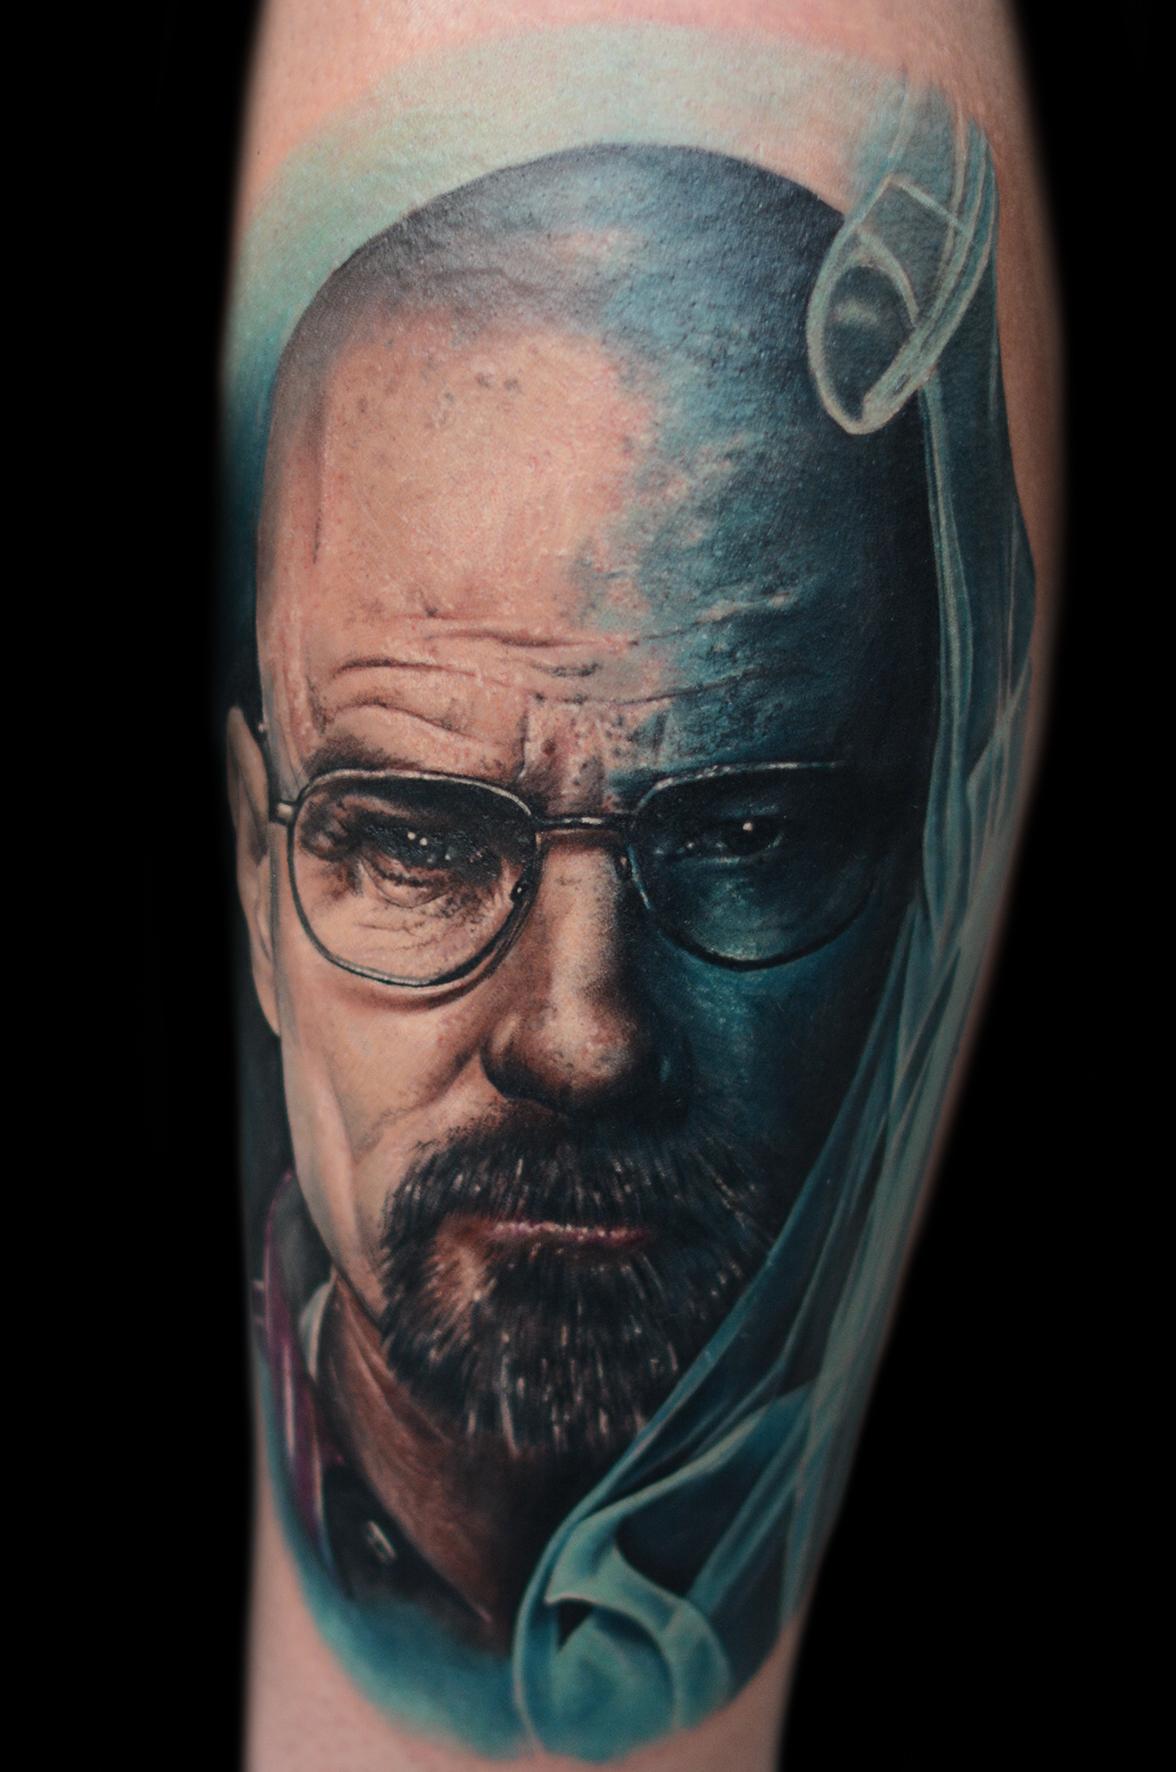 Inksearch tattoo Max Pniewski